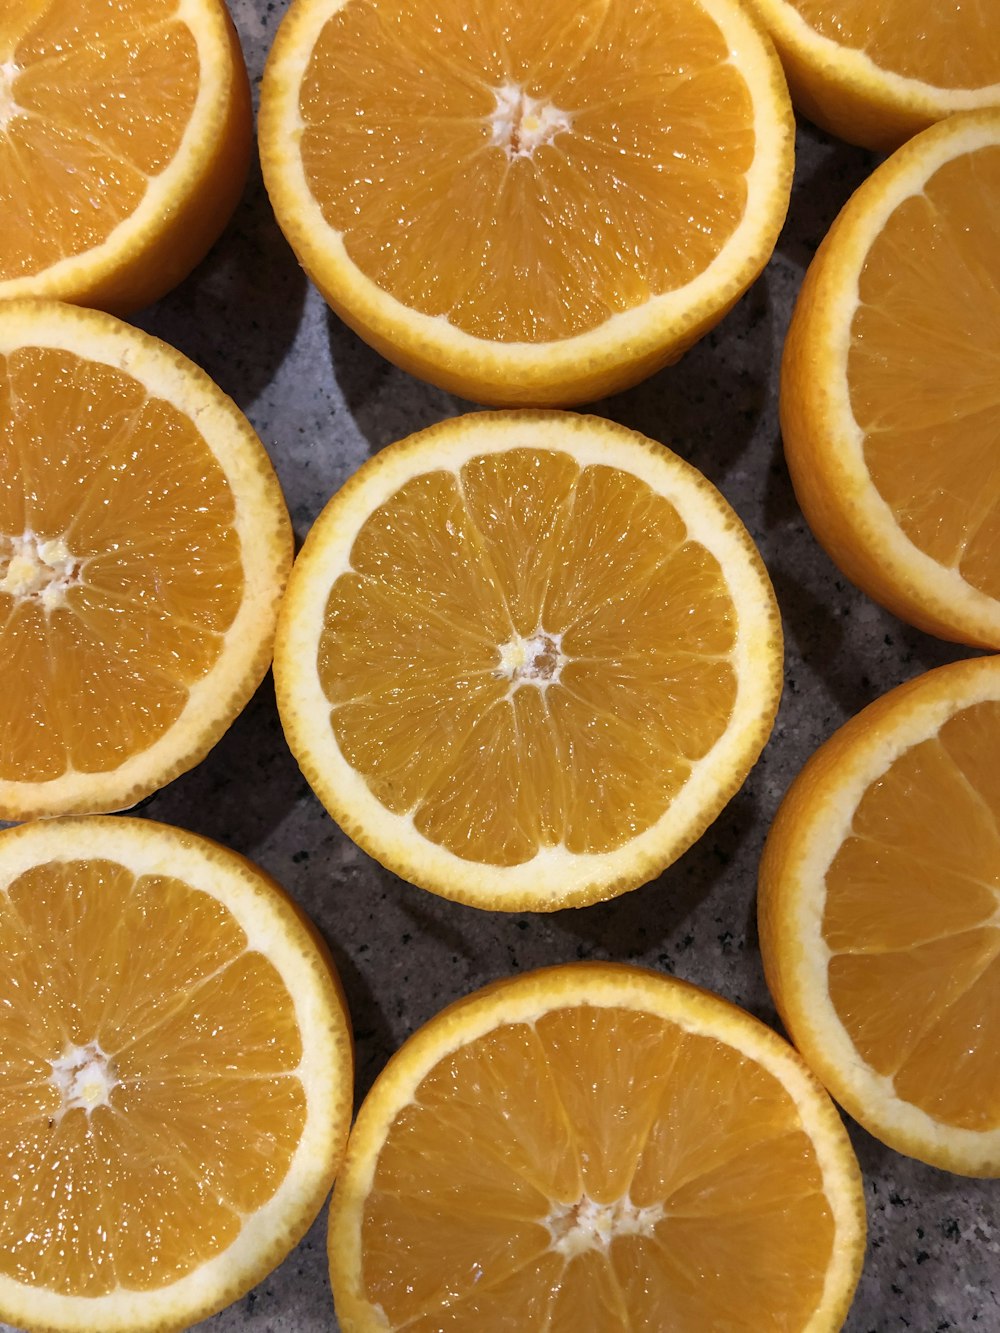 Foto von Orangenfrucht in Scheiben schließen